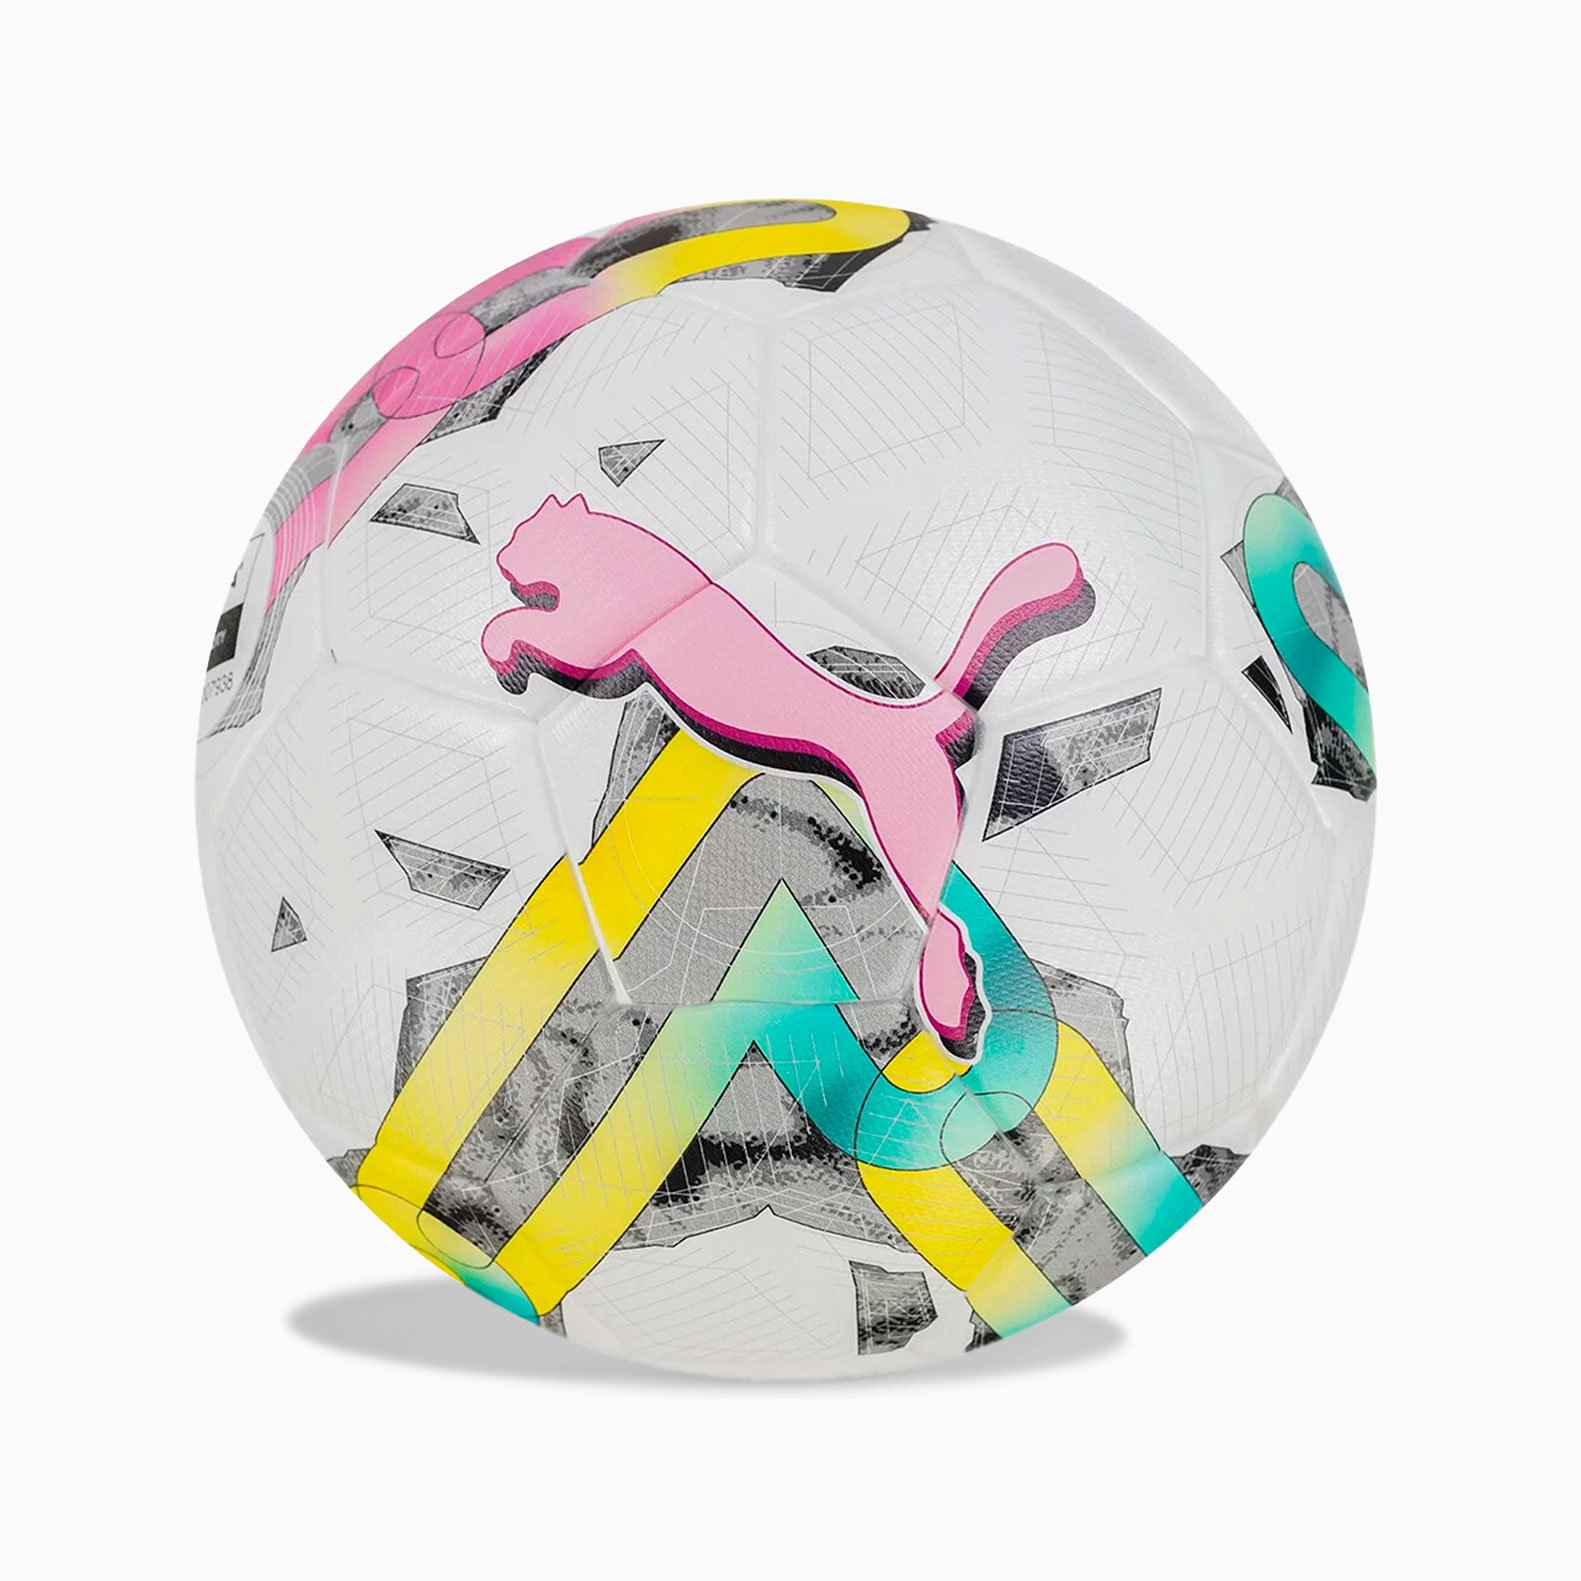 Мяч футбольный Puma Orbita 3 TB